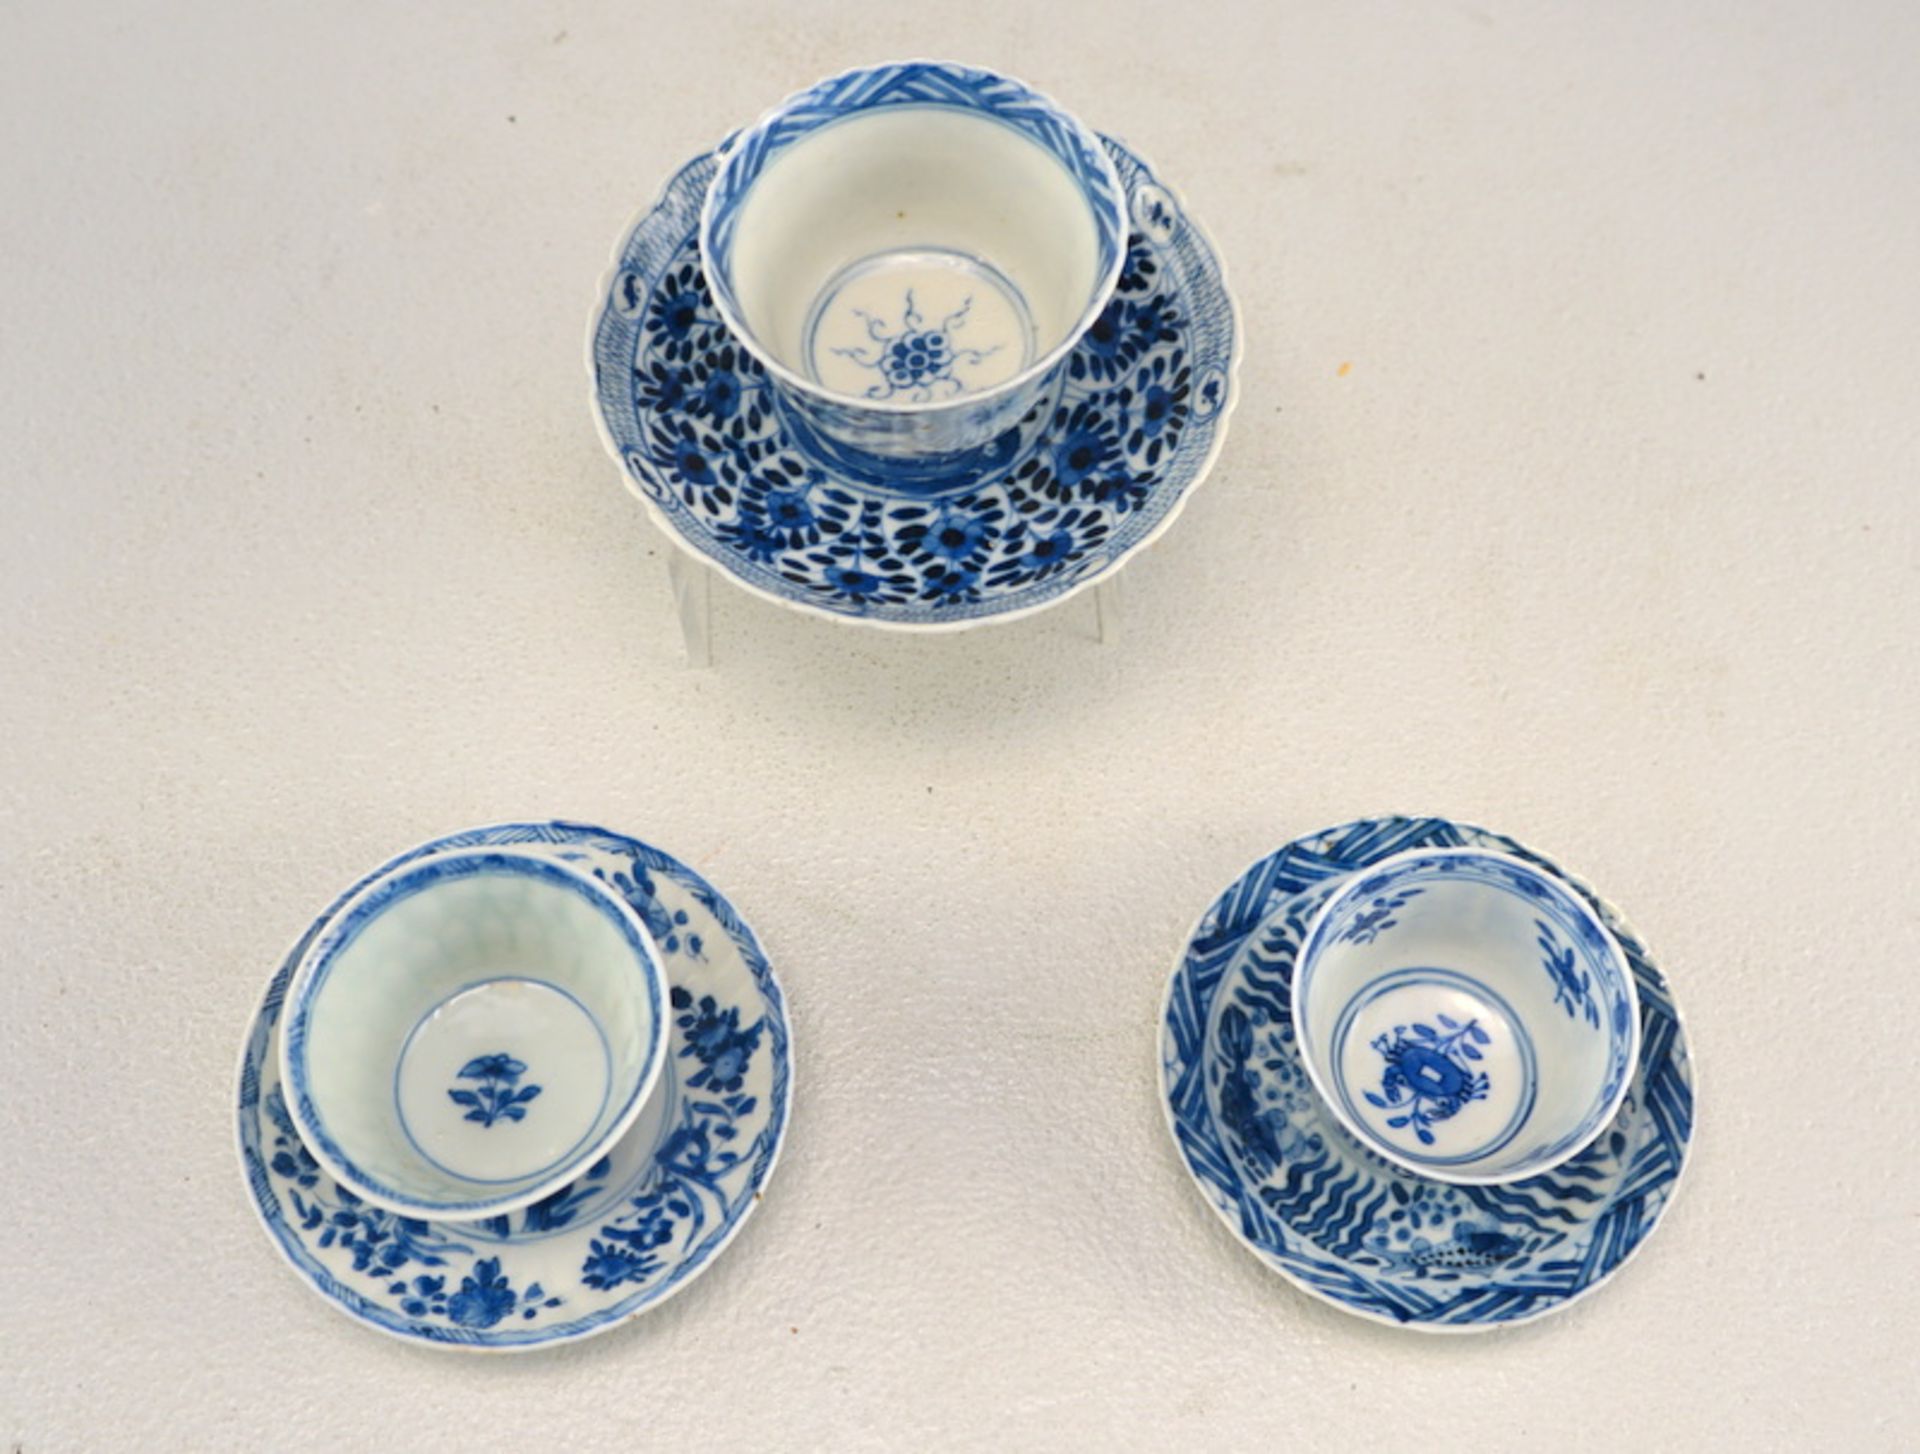 Drei Teekopchen, China 18./19. Jhd. für den europäischen Markt - Bild 2 aus 3